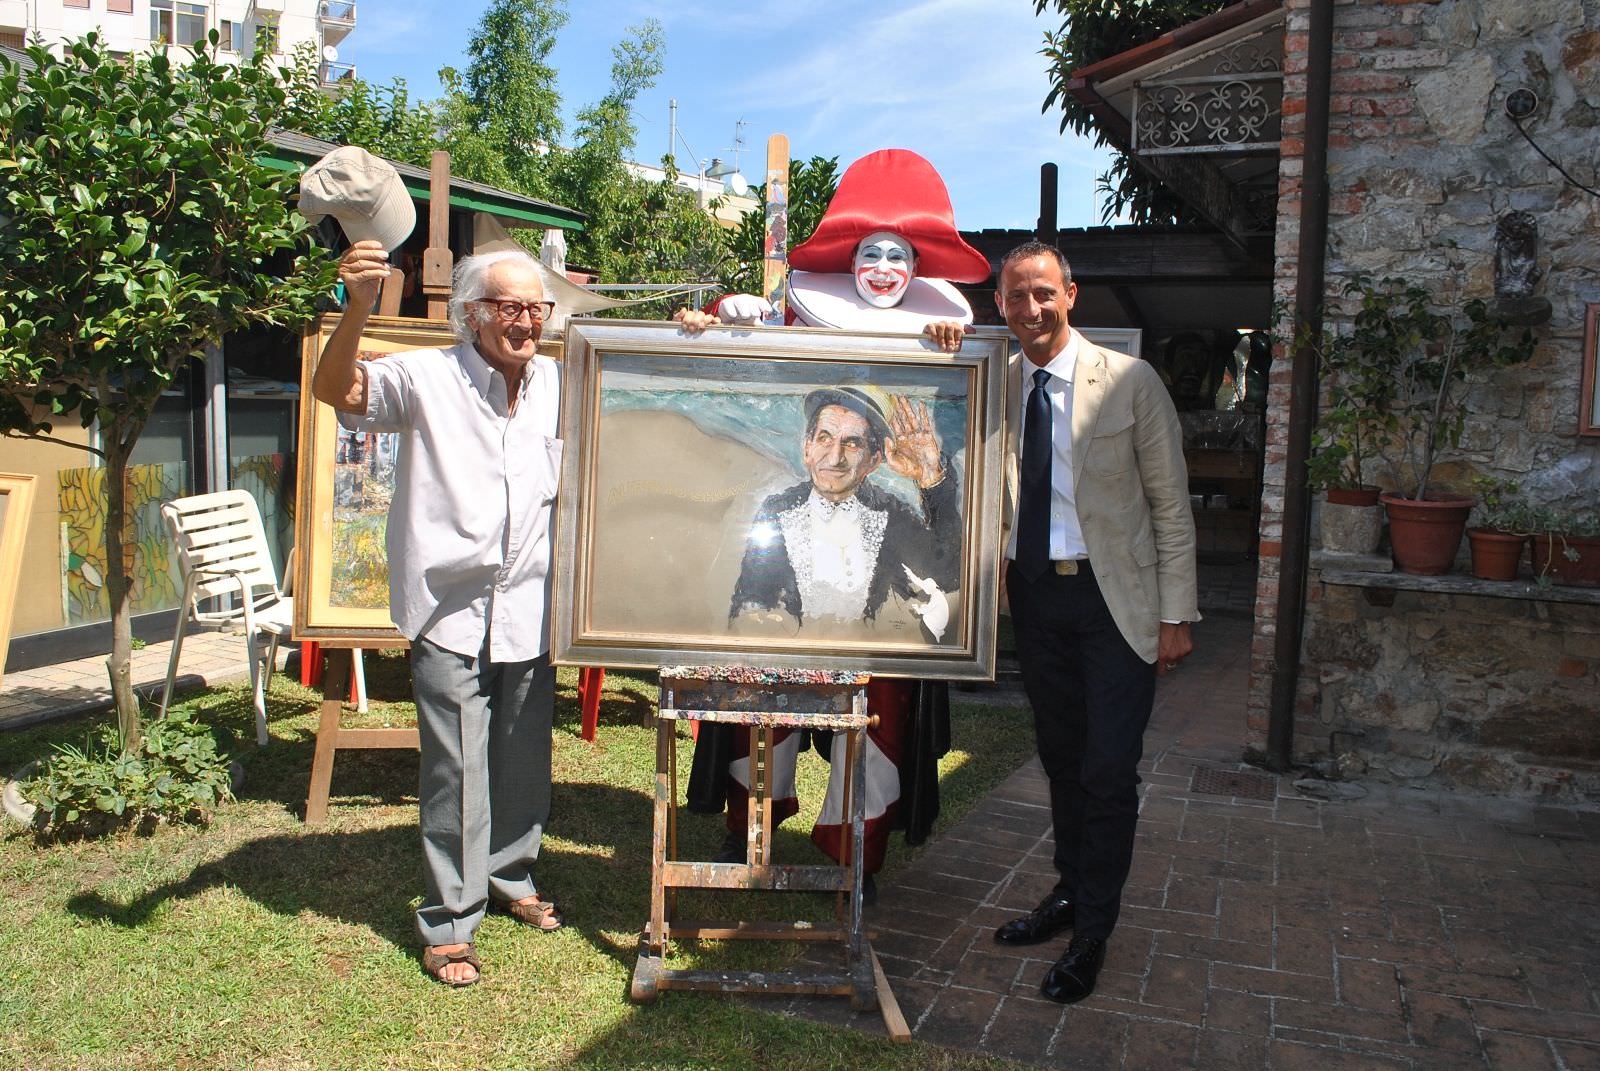 “Arte in giardino”, il decano dei carristi Arnaldo Galli espone i quadri nel cortile di casa sua